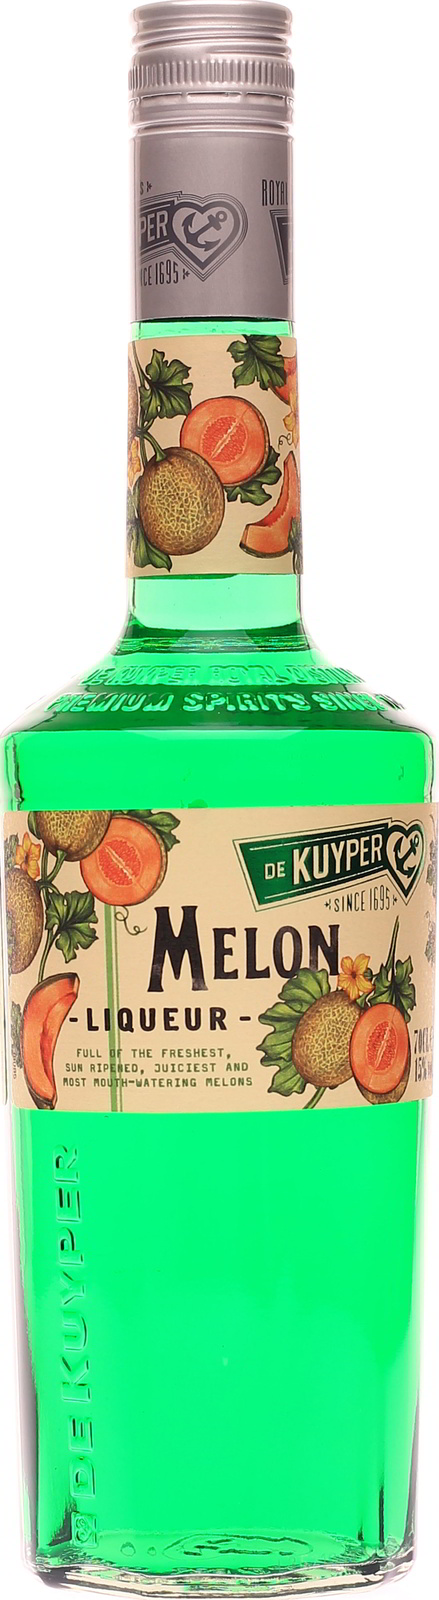 De Kuyper Melon, im günstig Shop Melonenlikör